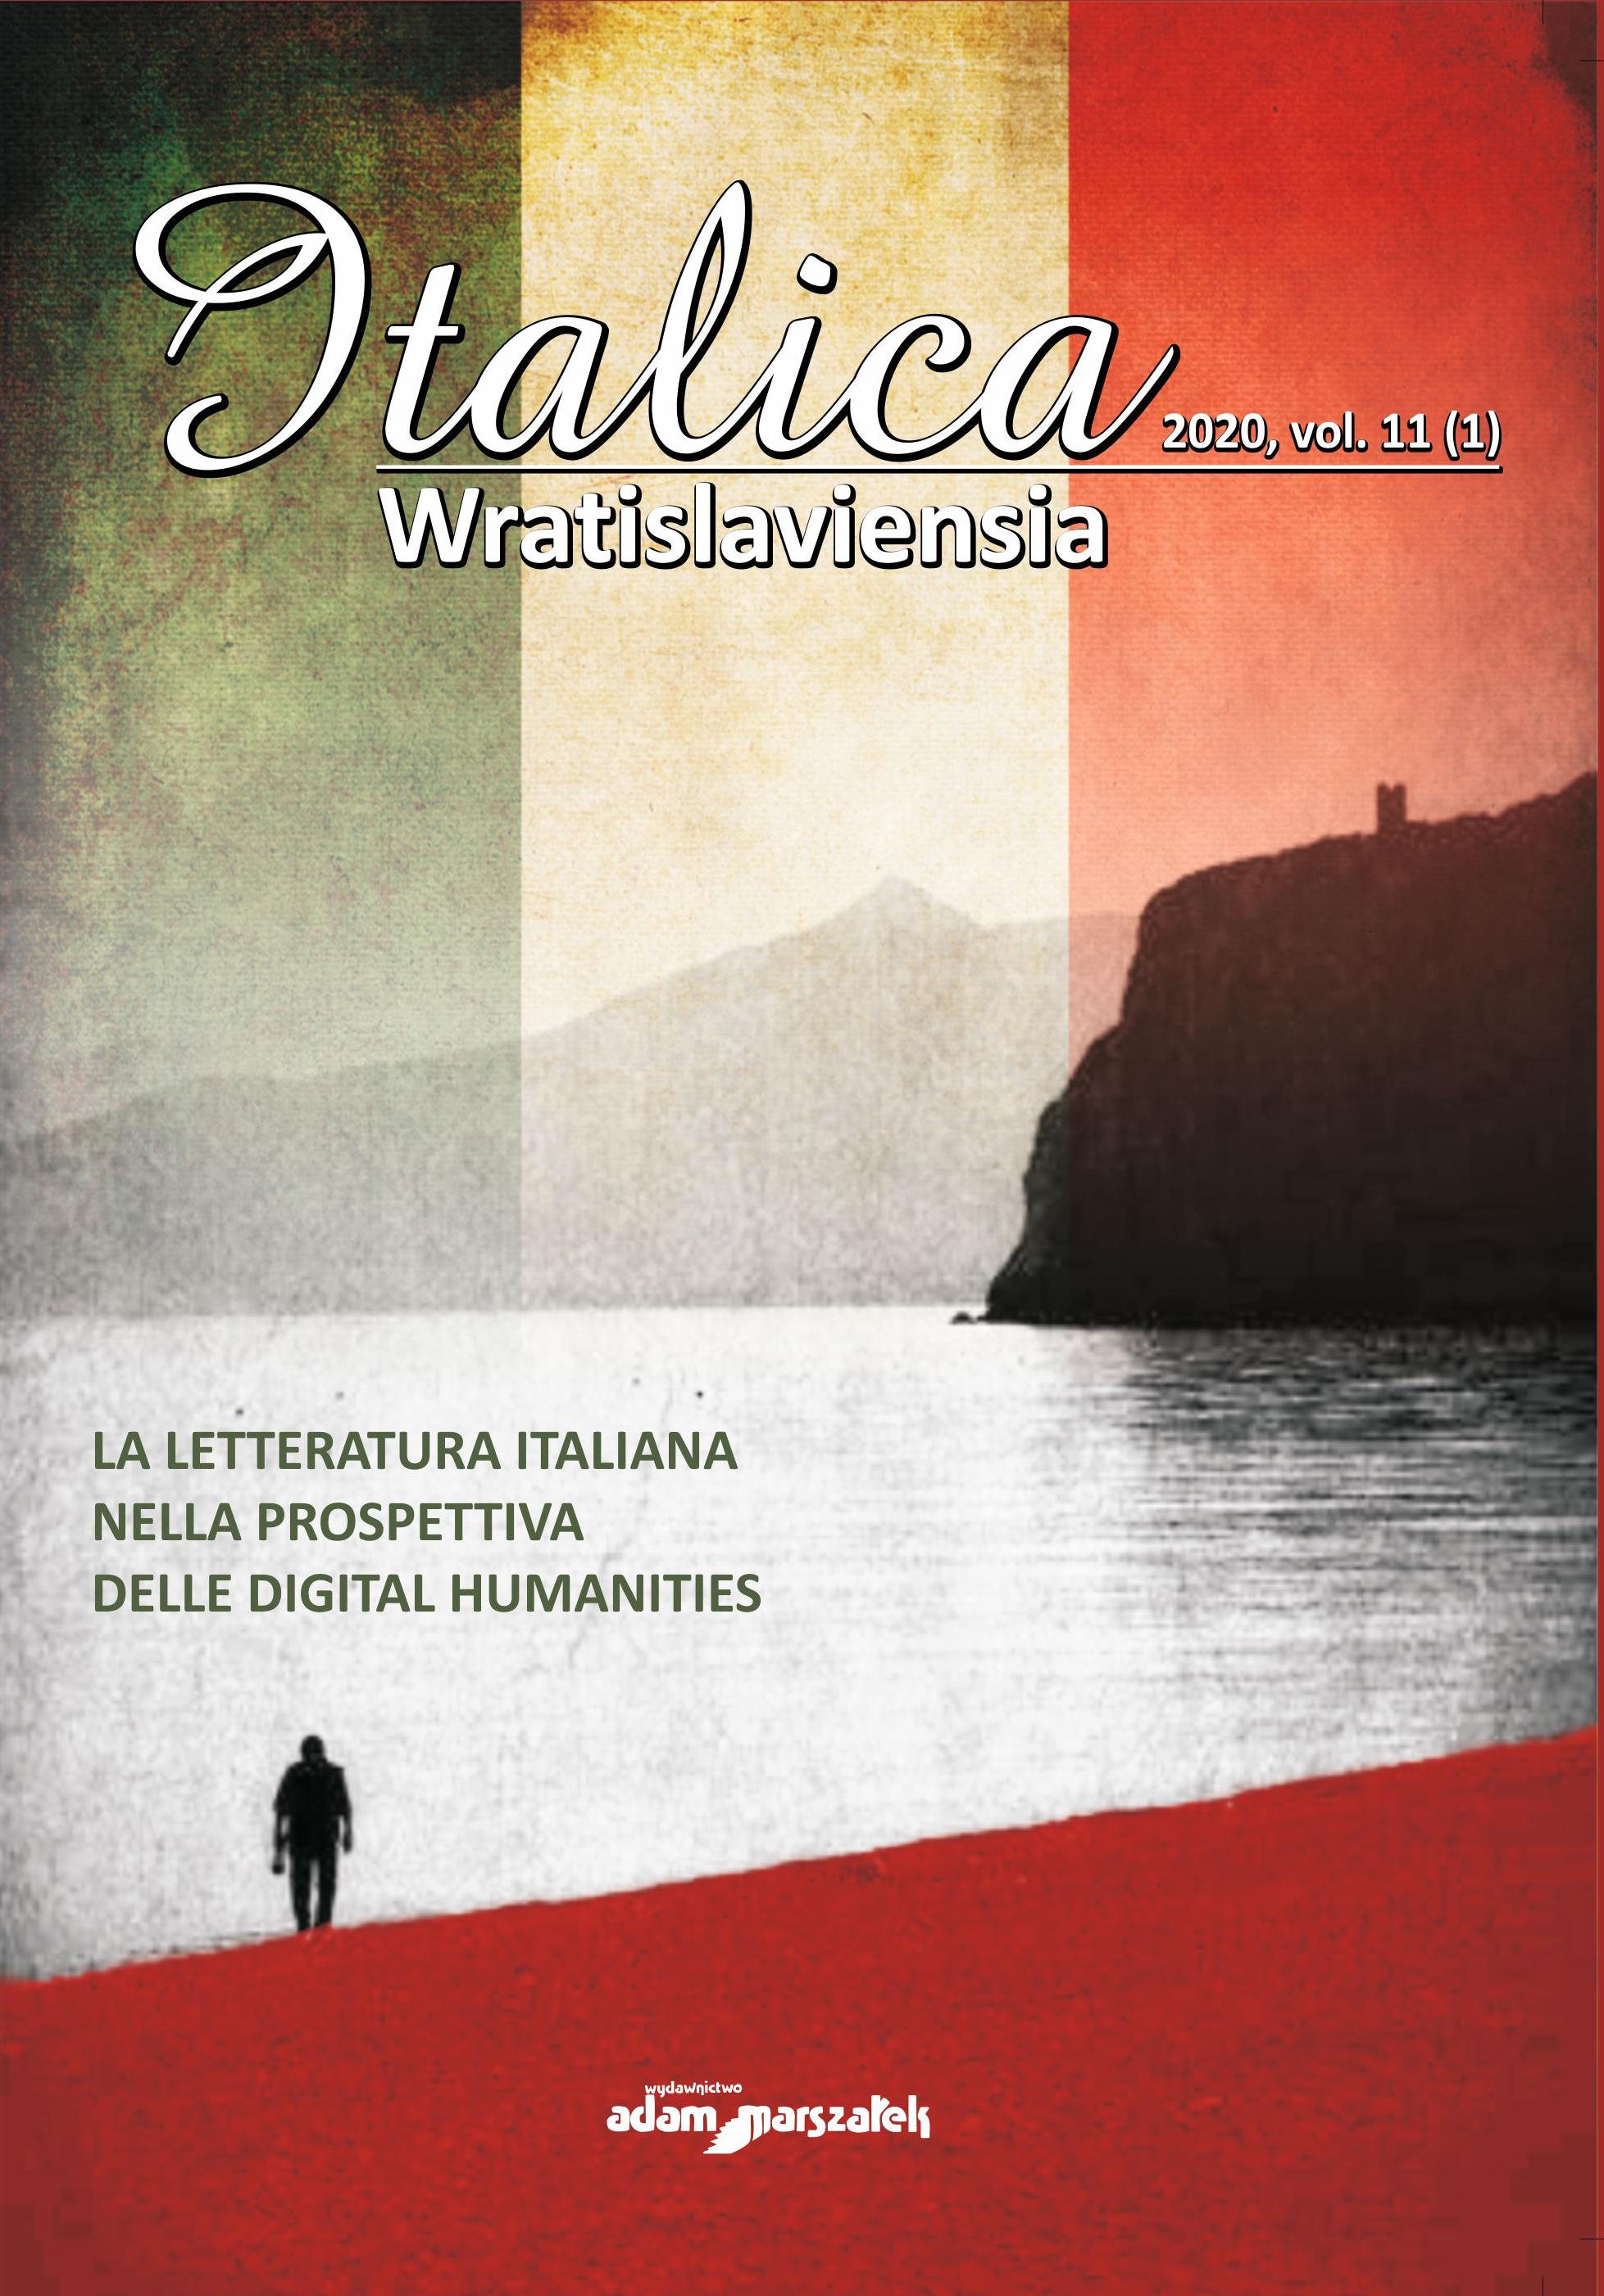 "Quo vadis" all’italiana: investigazione stilometrica sulle traduzioni milanesi del bestseller di Henryk Sienkiewicz